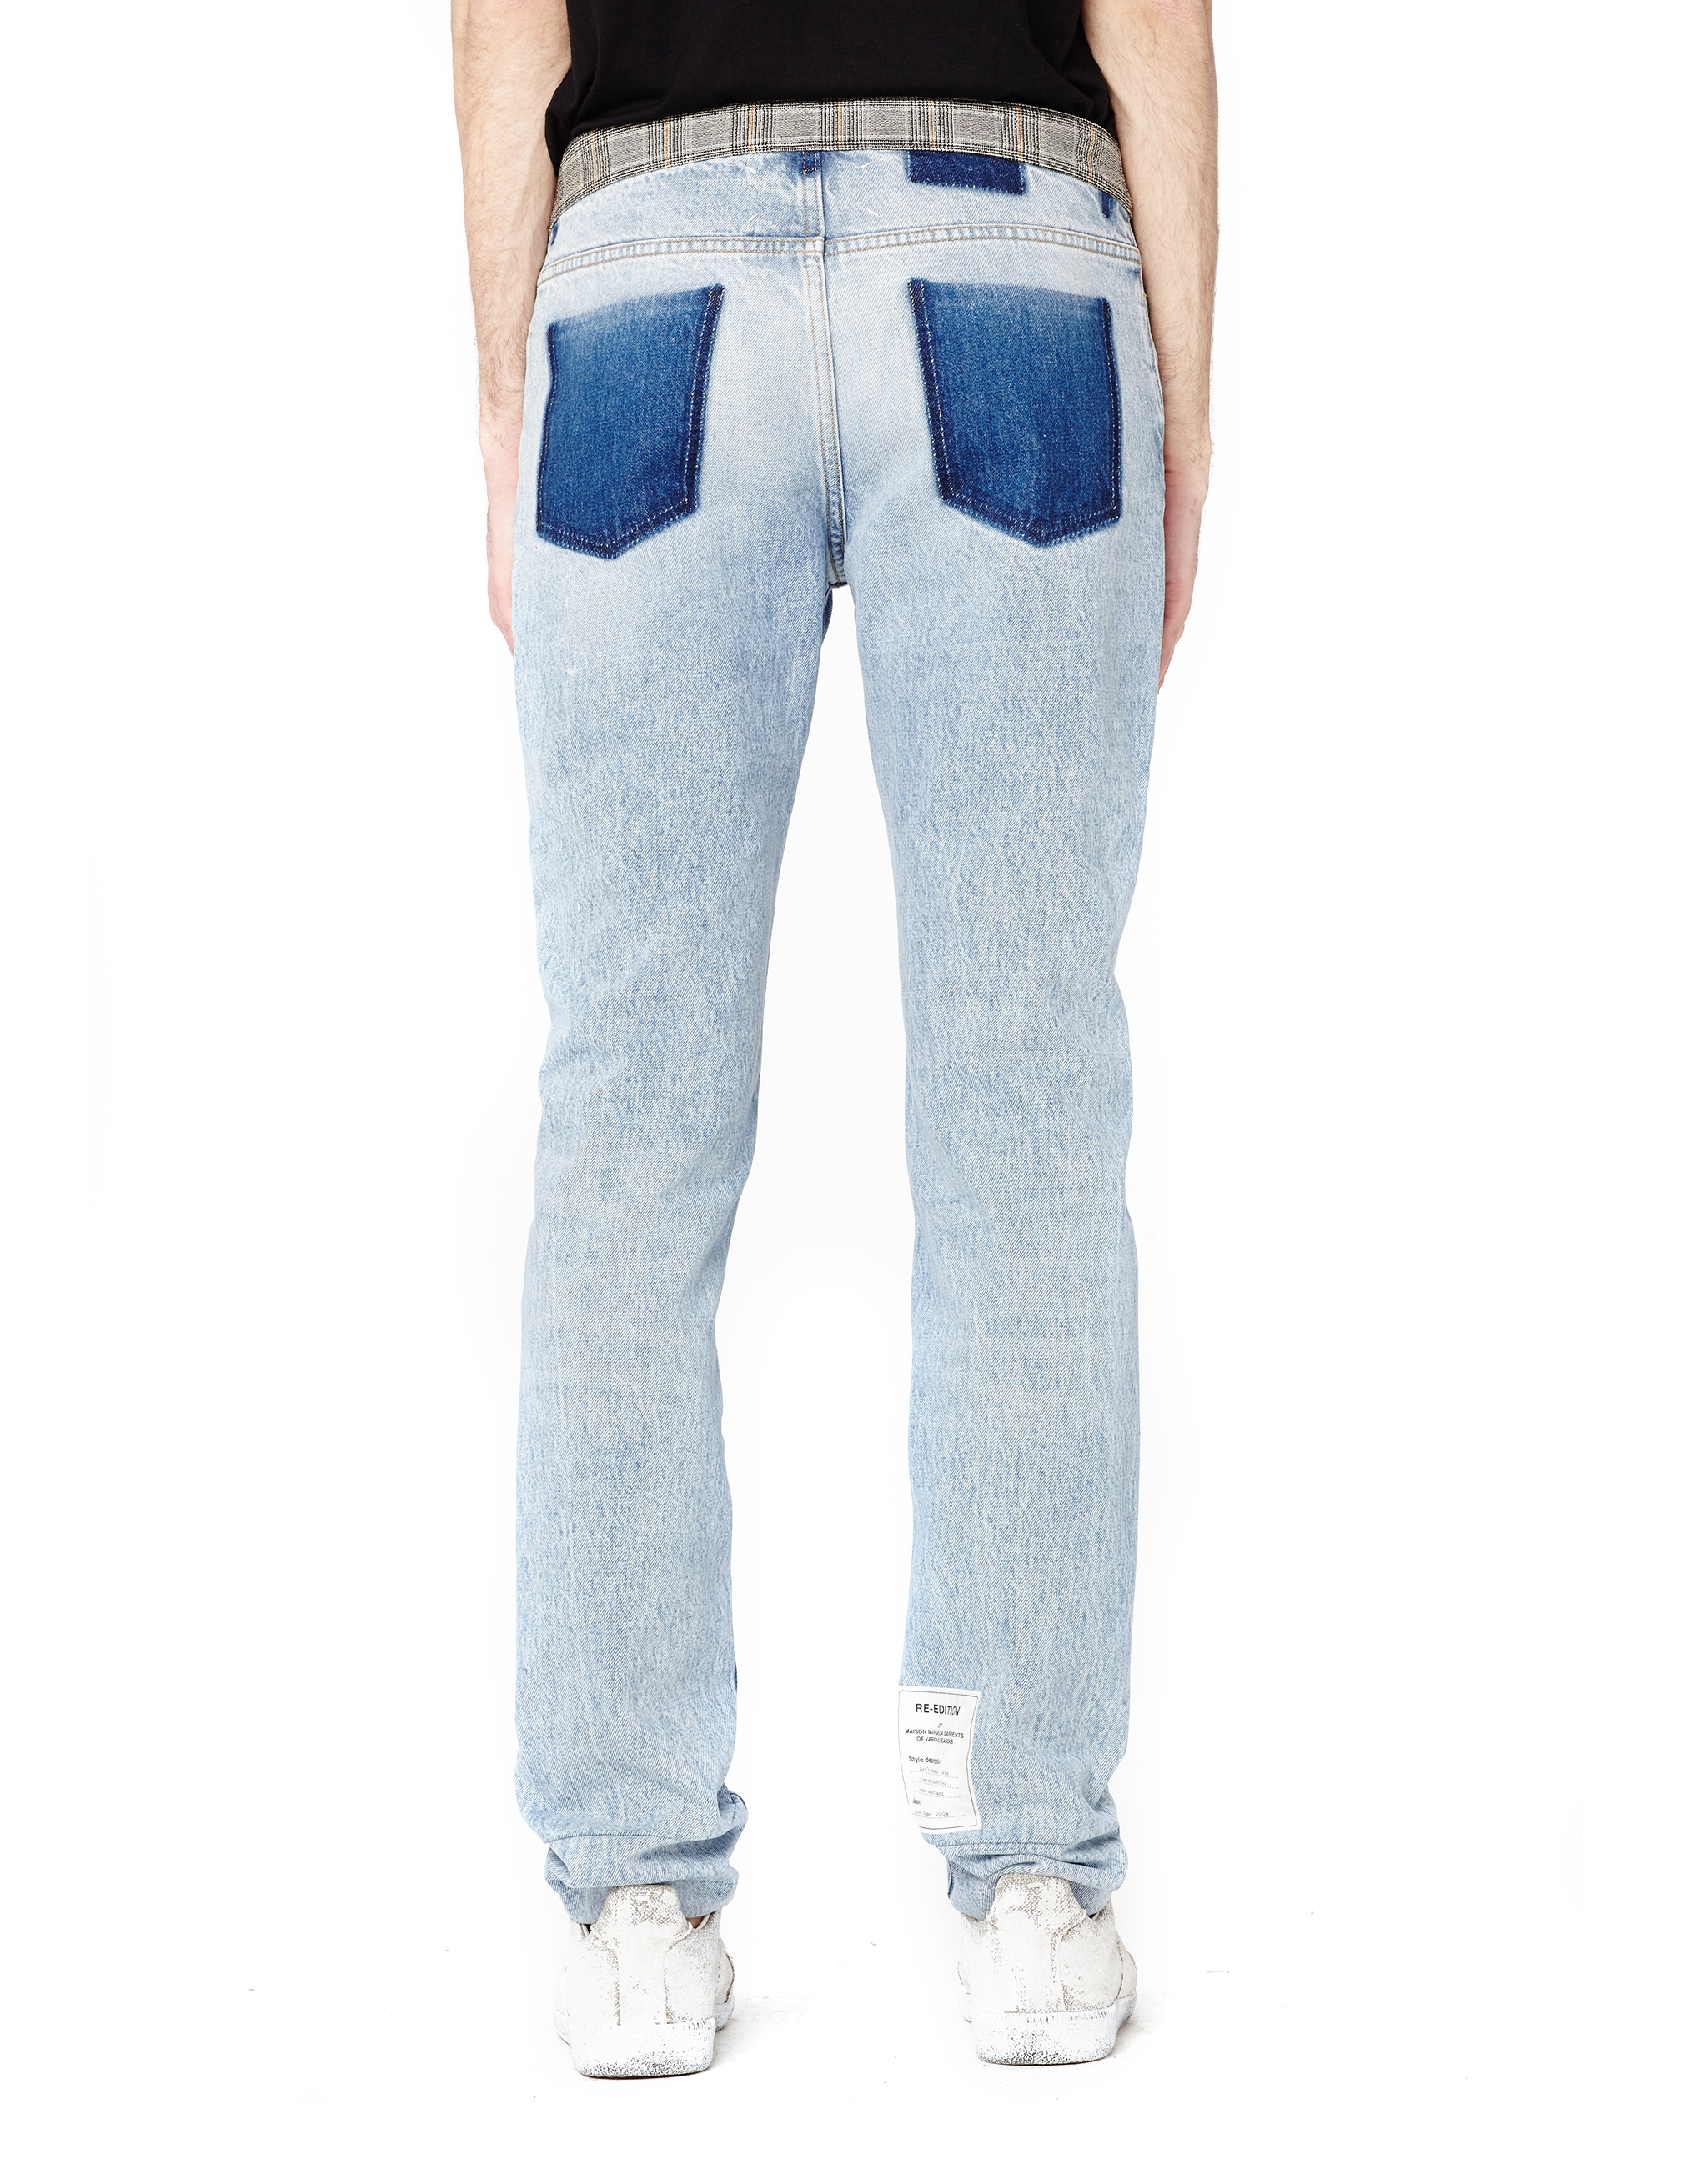 Хлопковые джинсы - Maison Margiela S30LA0110 Фото 3